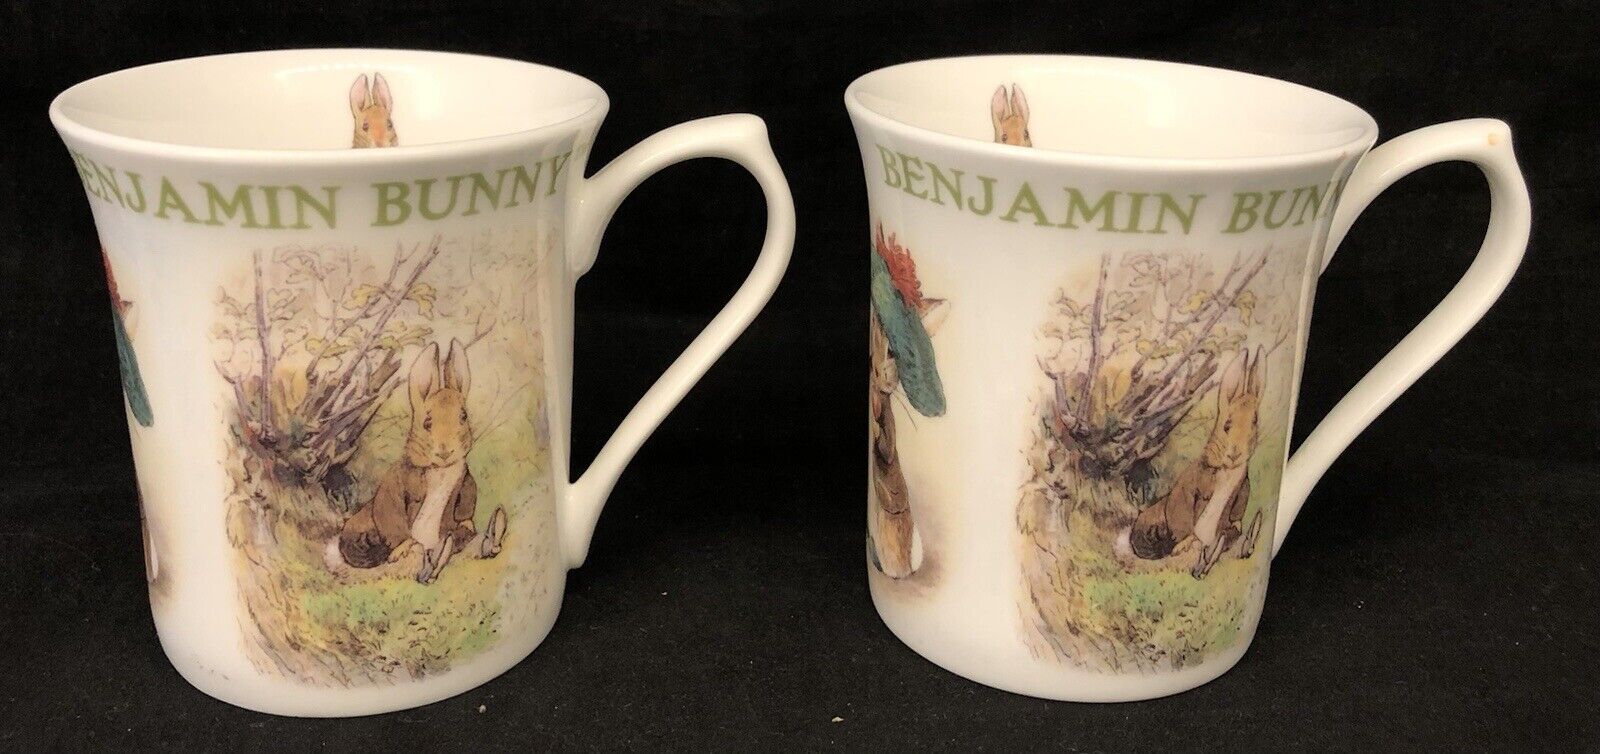 Lot of 2 Beatrix Potter Benjamin Bunny Mugs Cups by Queen’s 2007